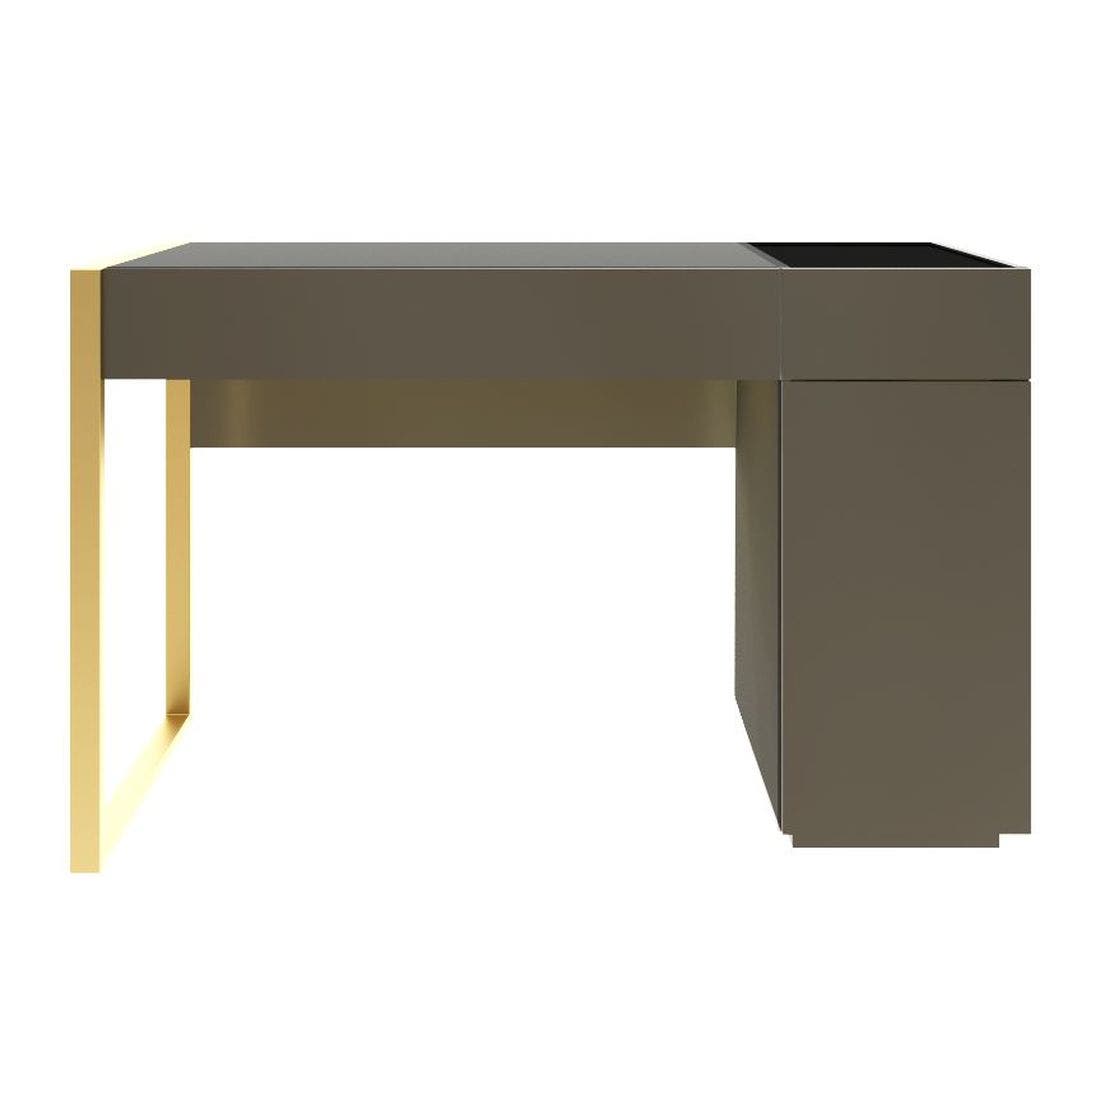 ชุดห้องนอน โต๊ะเครื่องแป้งแบบนั่ง รุ่น Heztiara สีสีเทาเข้ม-SB Design Square